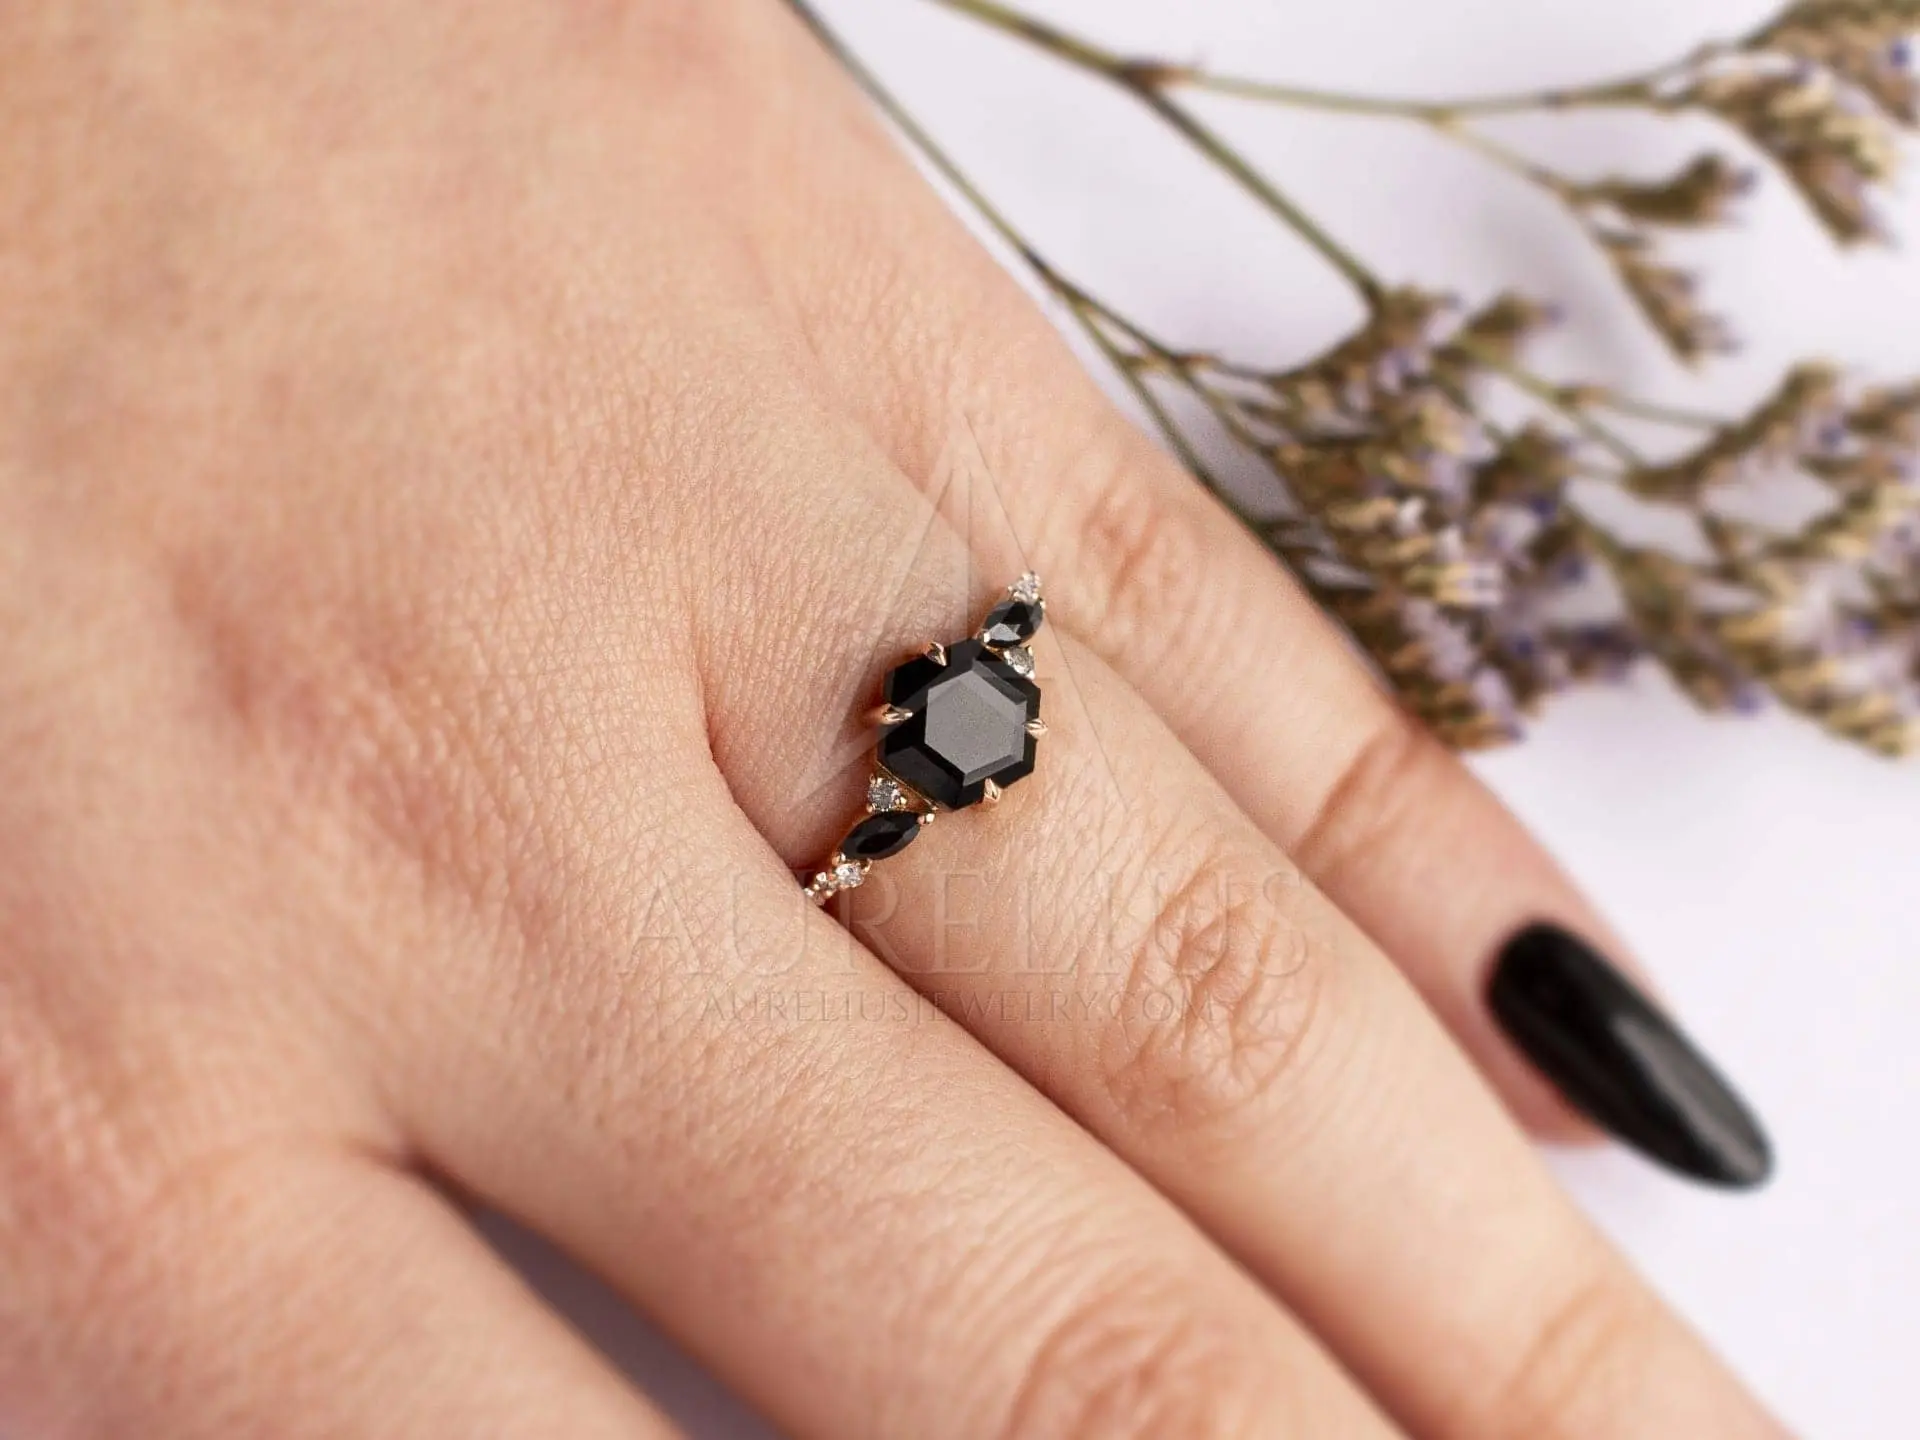 Black Onyx Engagement Ring- 14k Rose Gold Finish Black Onyx Wedding Ring  Set | eBay